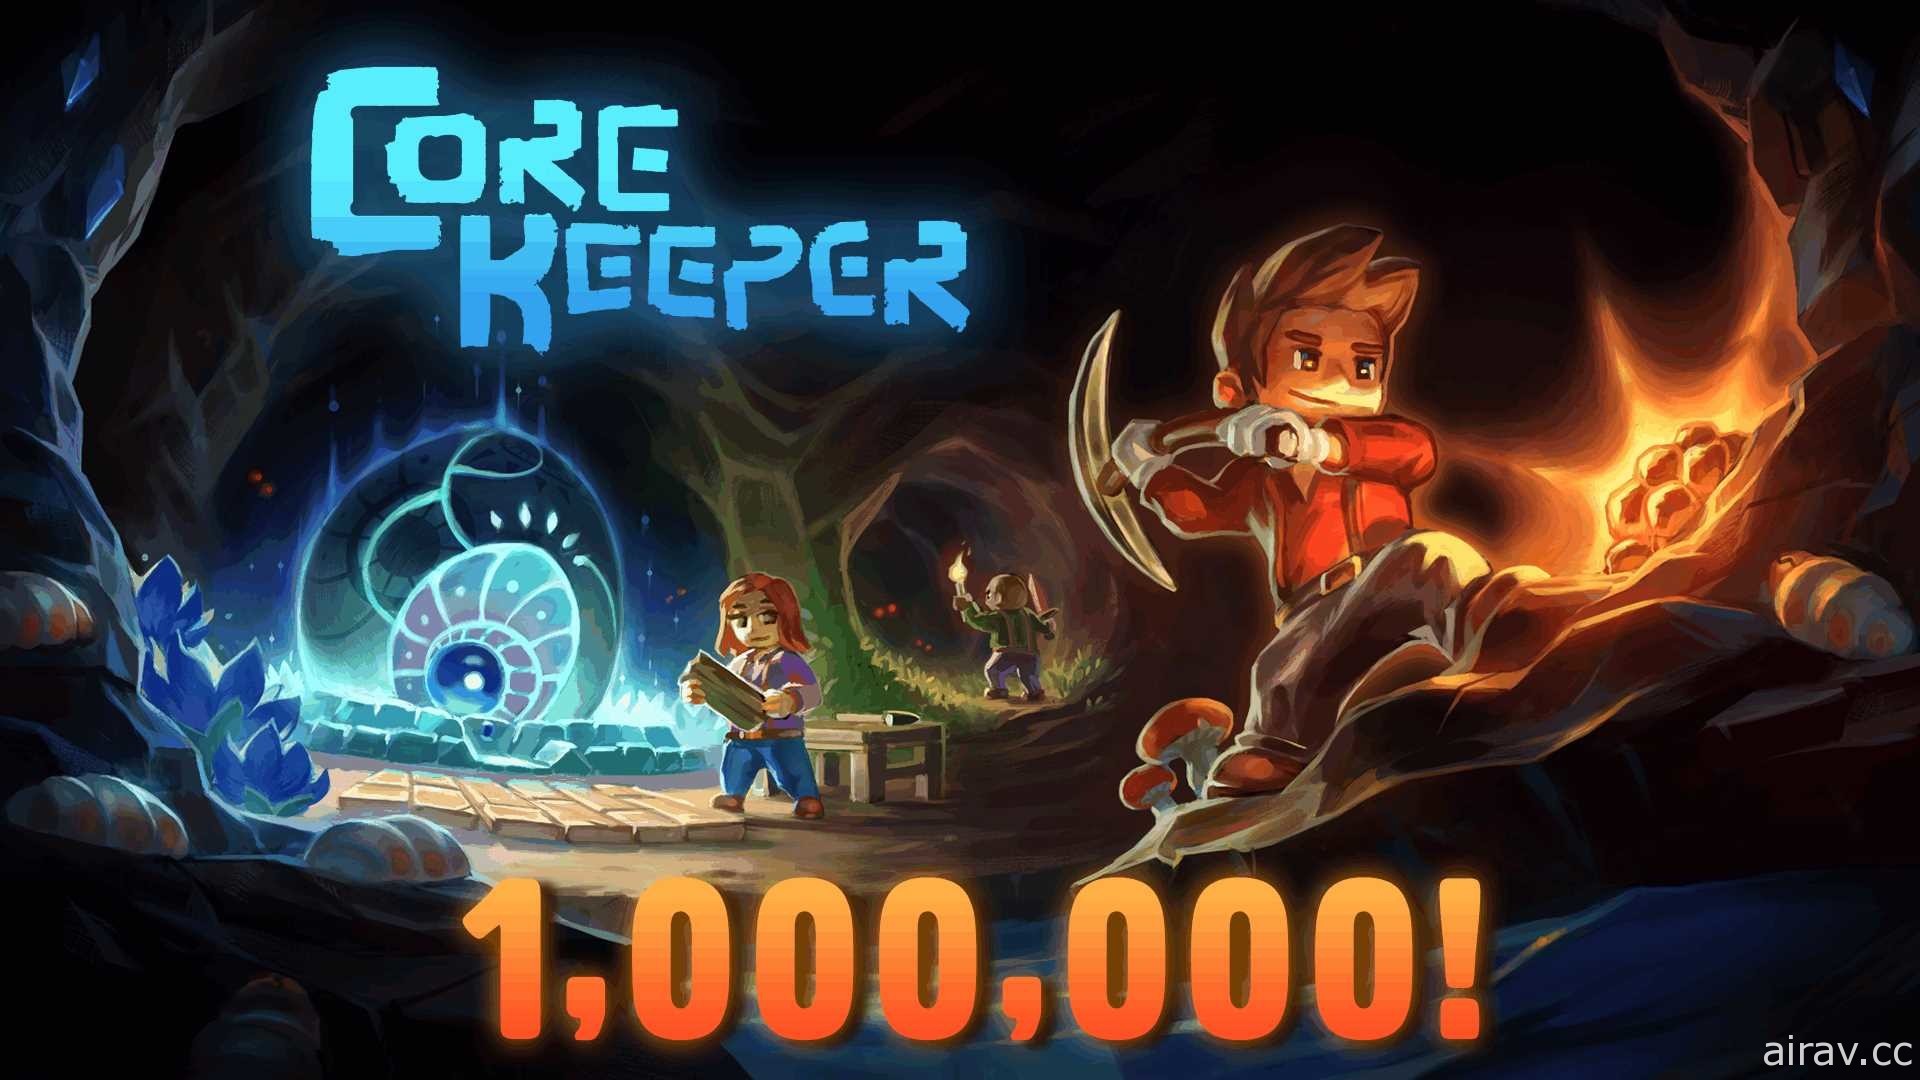 正在抢先体验中的采矿沙盒冒险游戏《Core Keeper》销量突破百万套